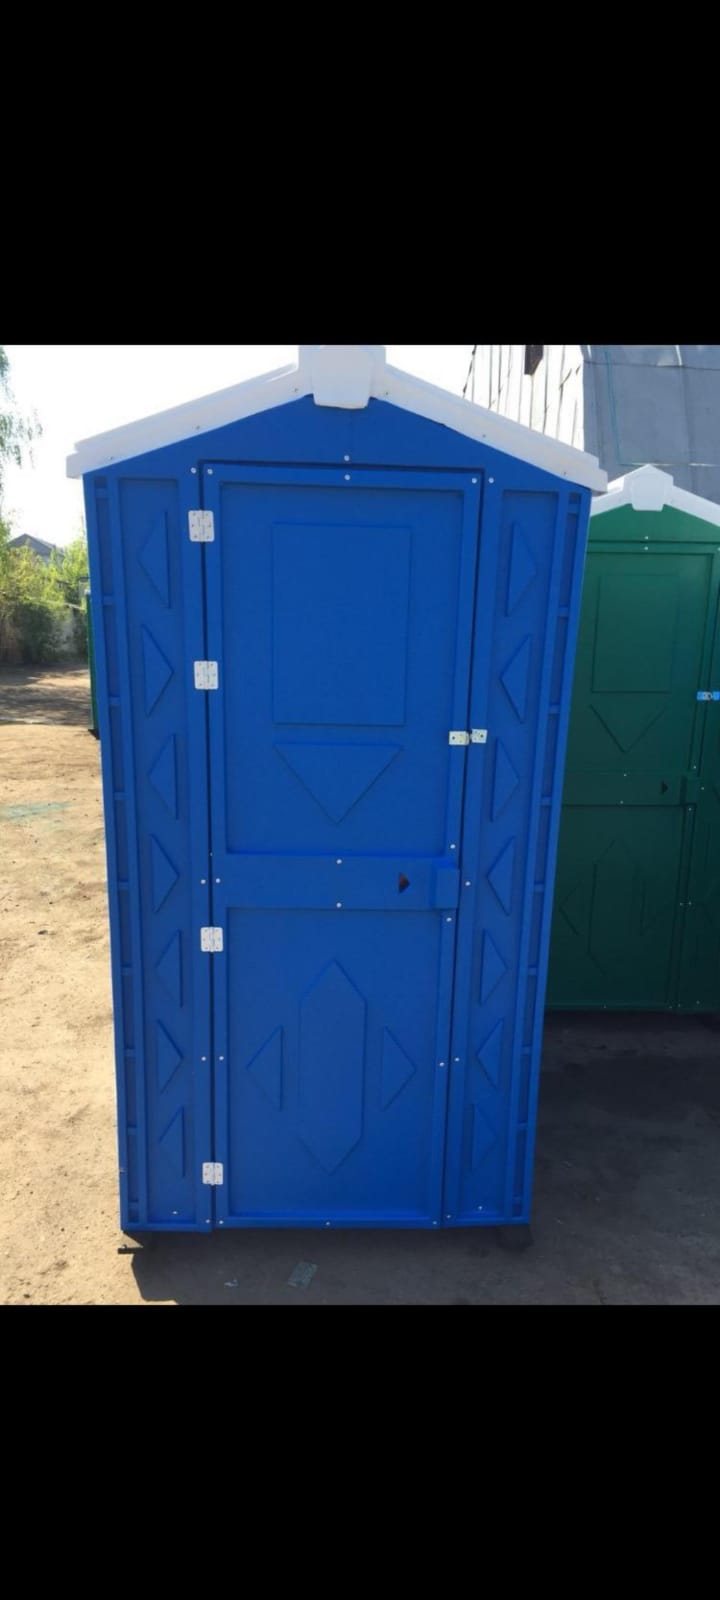 Туалетная кабина